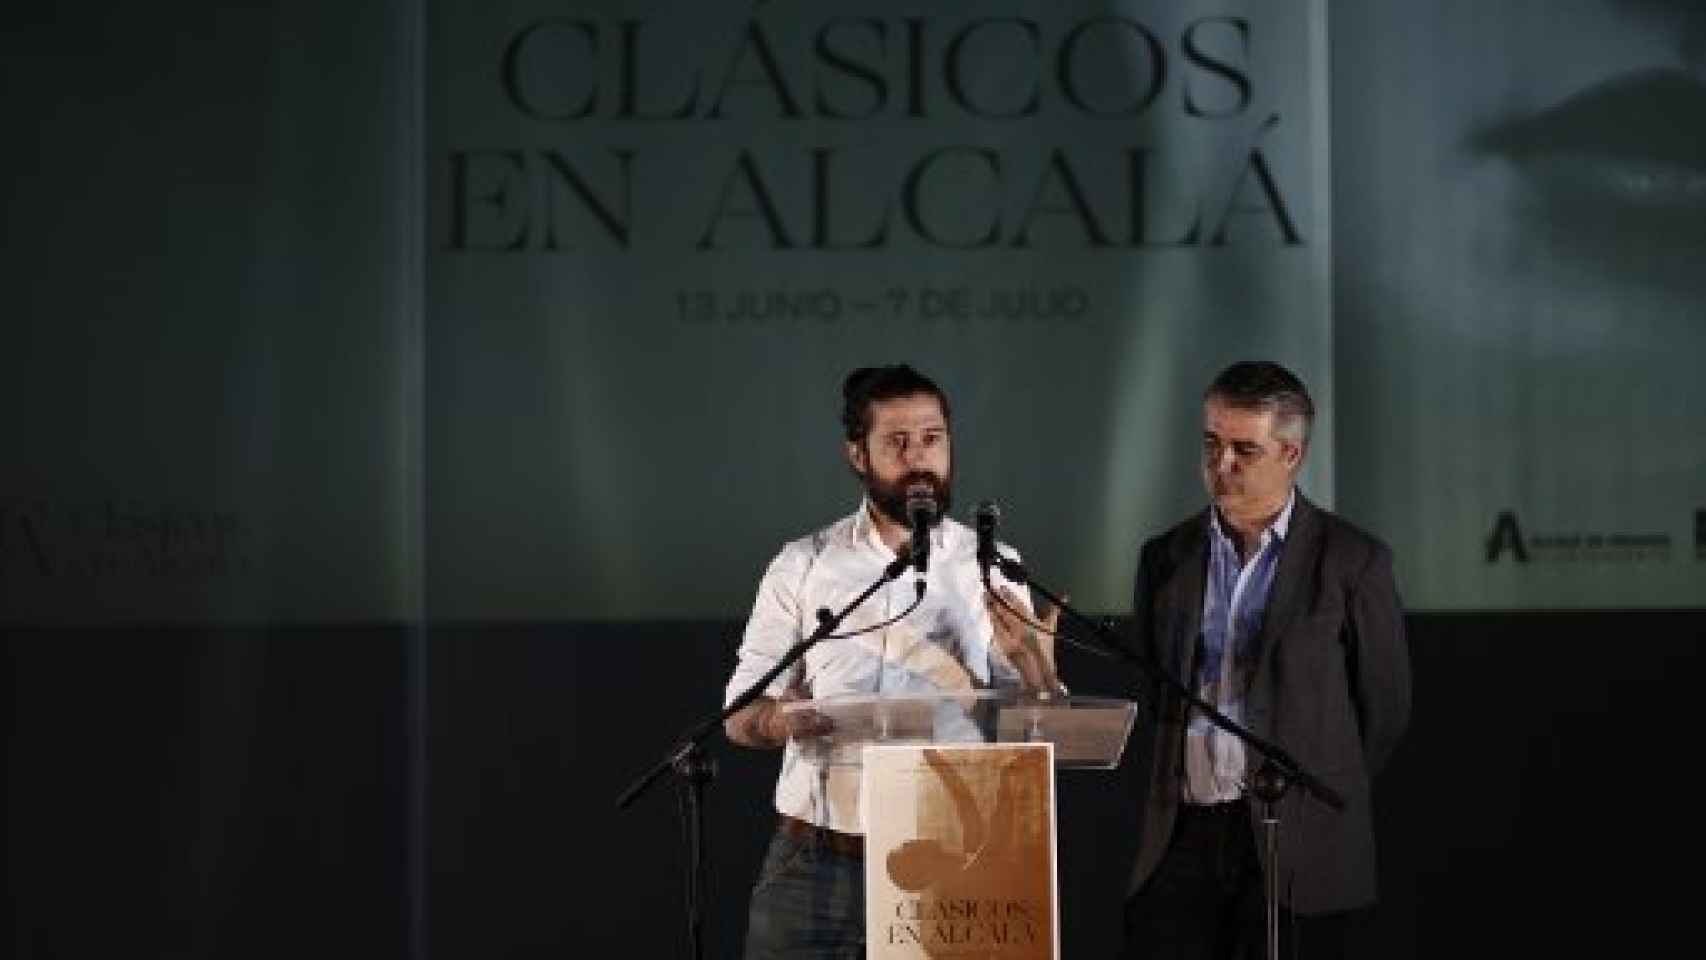 Image: Clásicos en Alcalá, más rupturista y madrileño